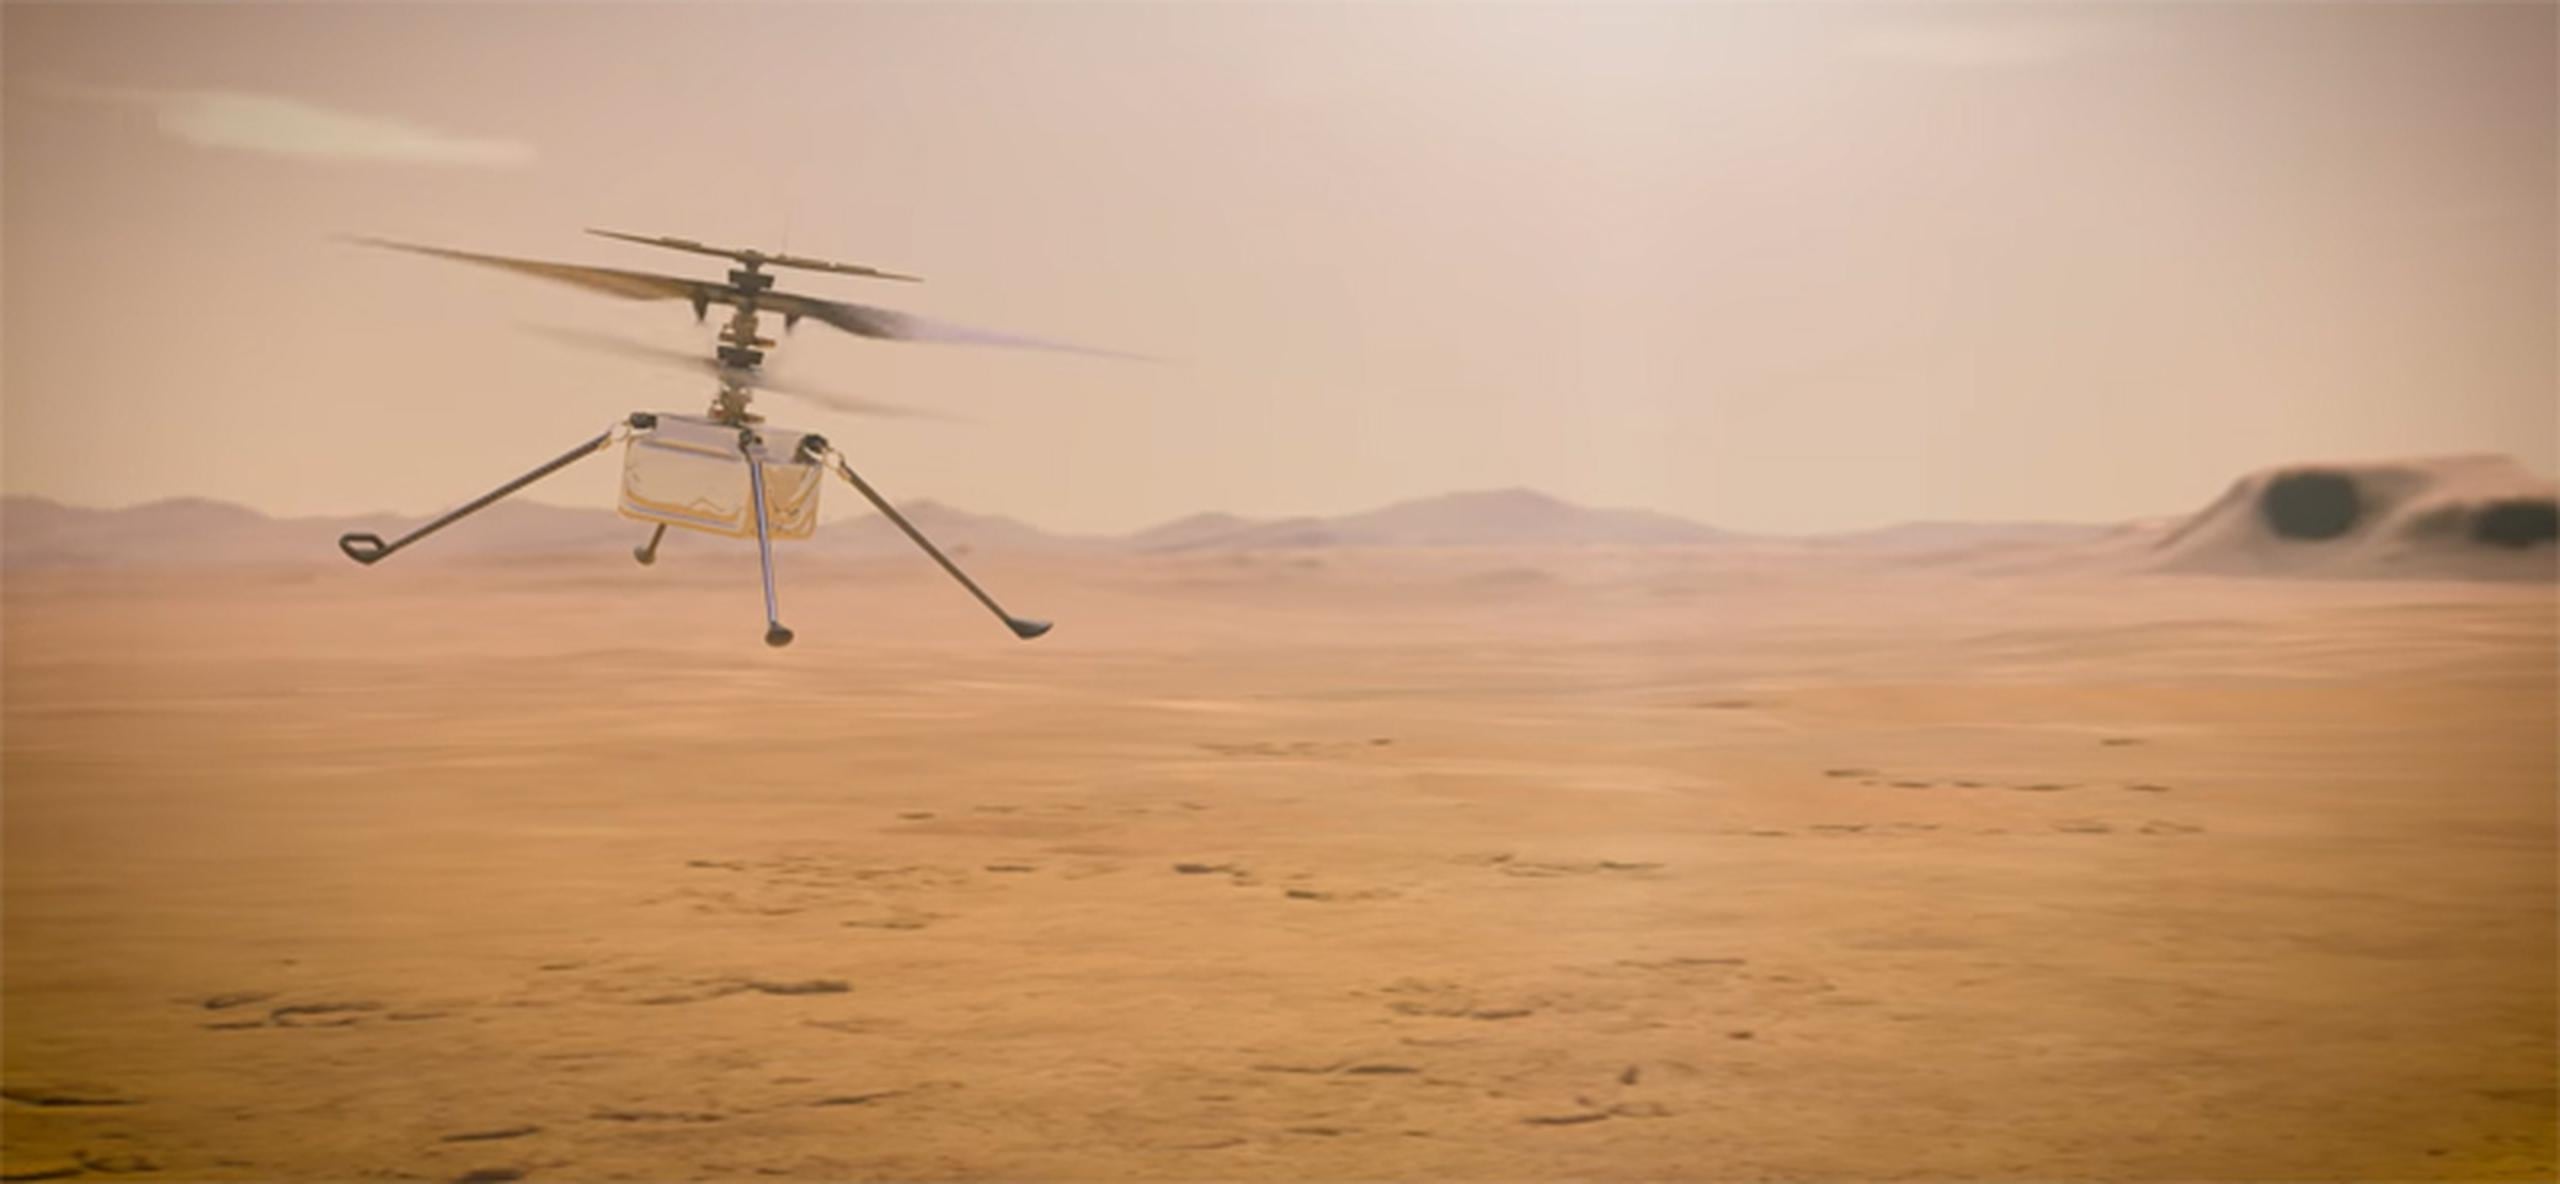 El helicóptero pesa cuatro libras y funciona con energía solar, dijo NASA.